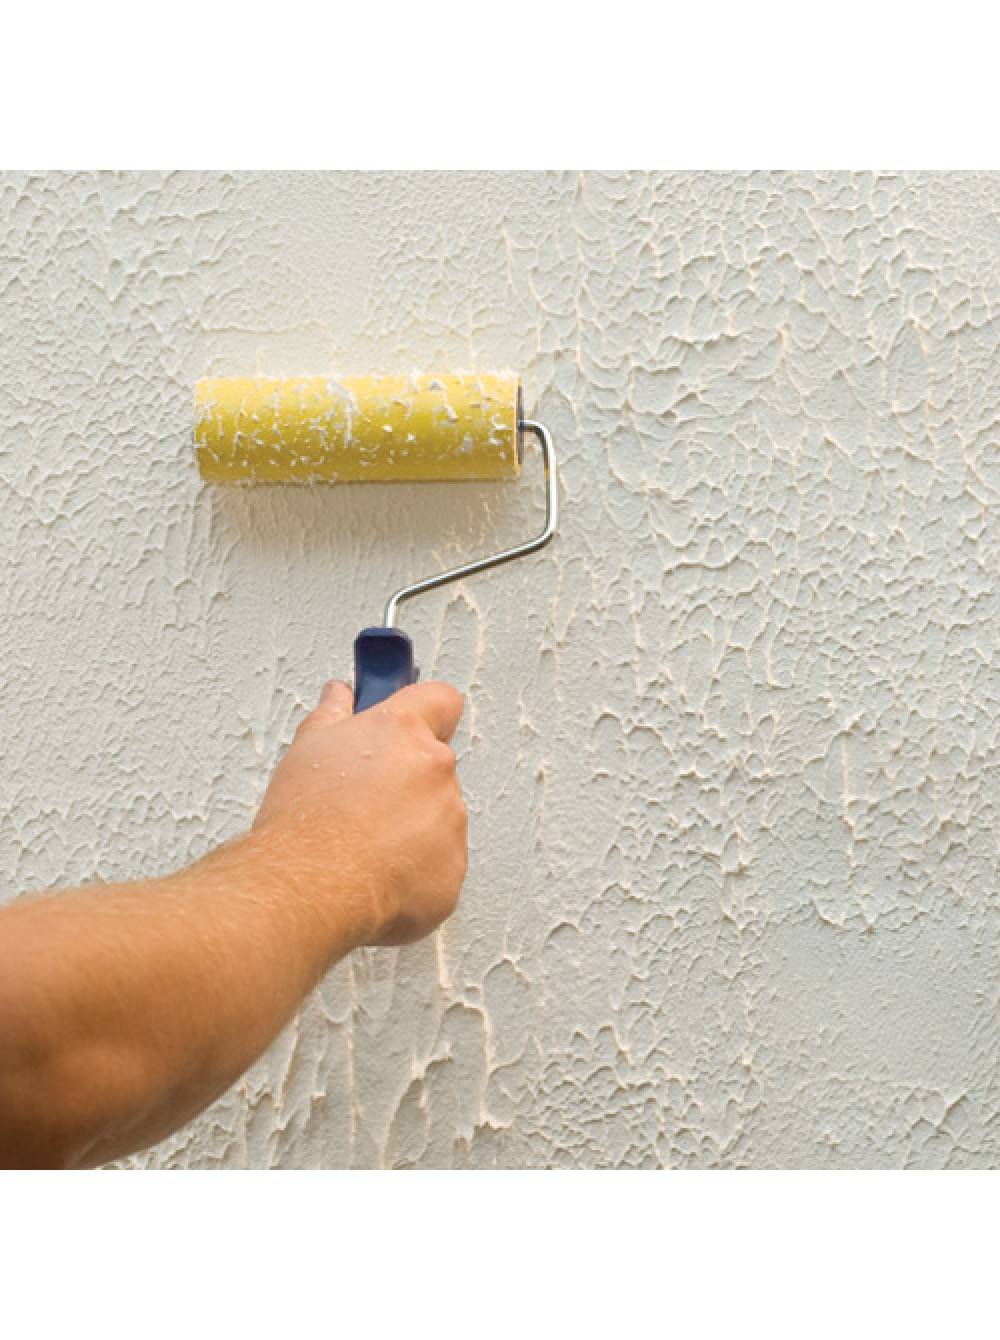 Правила и рекомендации о том, как идеально зашпаклевать и ровно покрасить стены